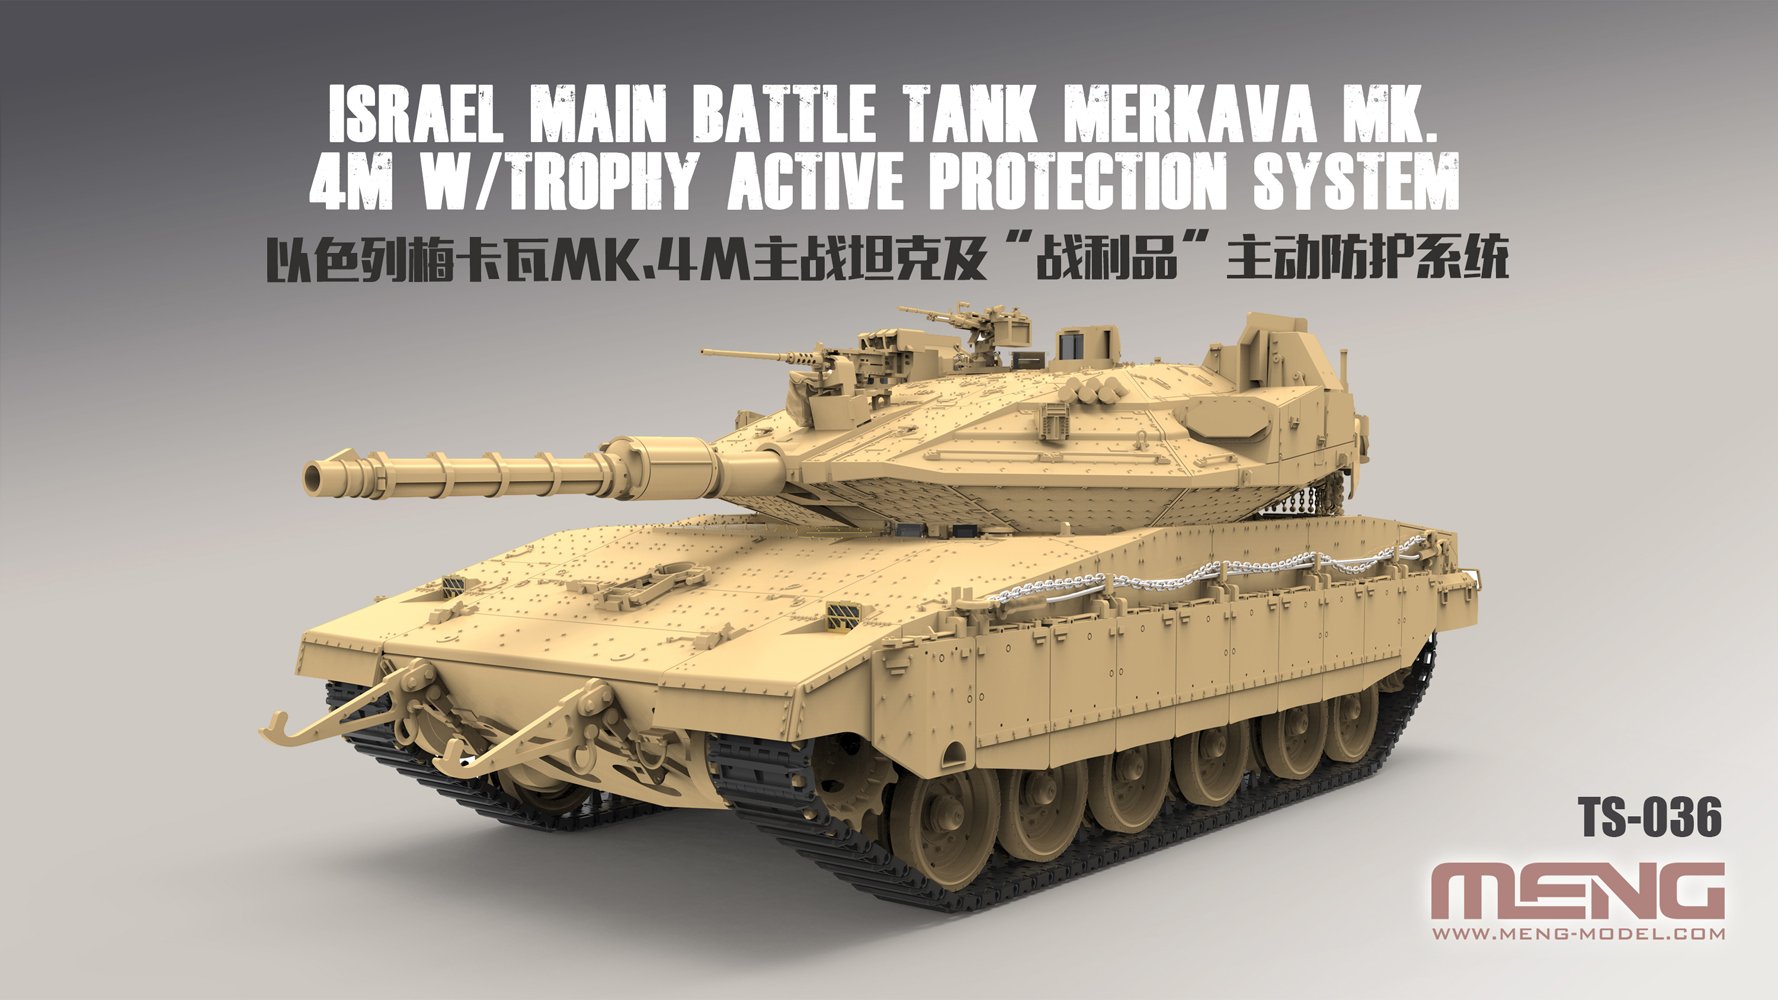 1/35 现代以色列梅卡瓦Mk.4M型主战坦克(战利品主动防御系统)